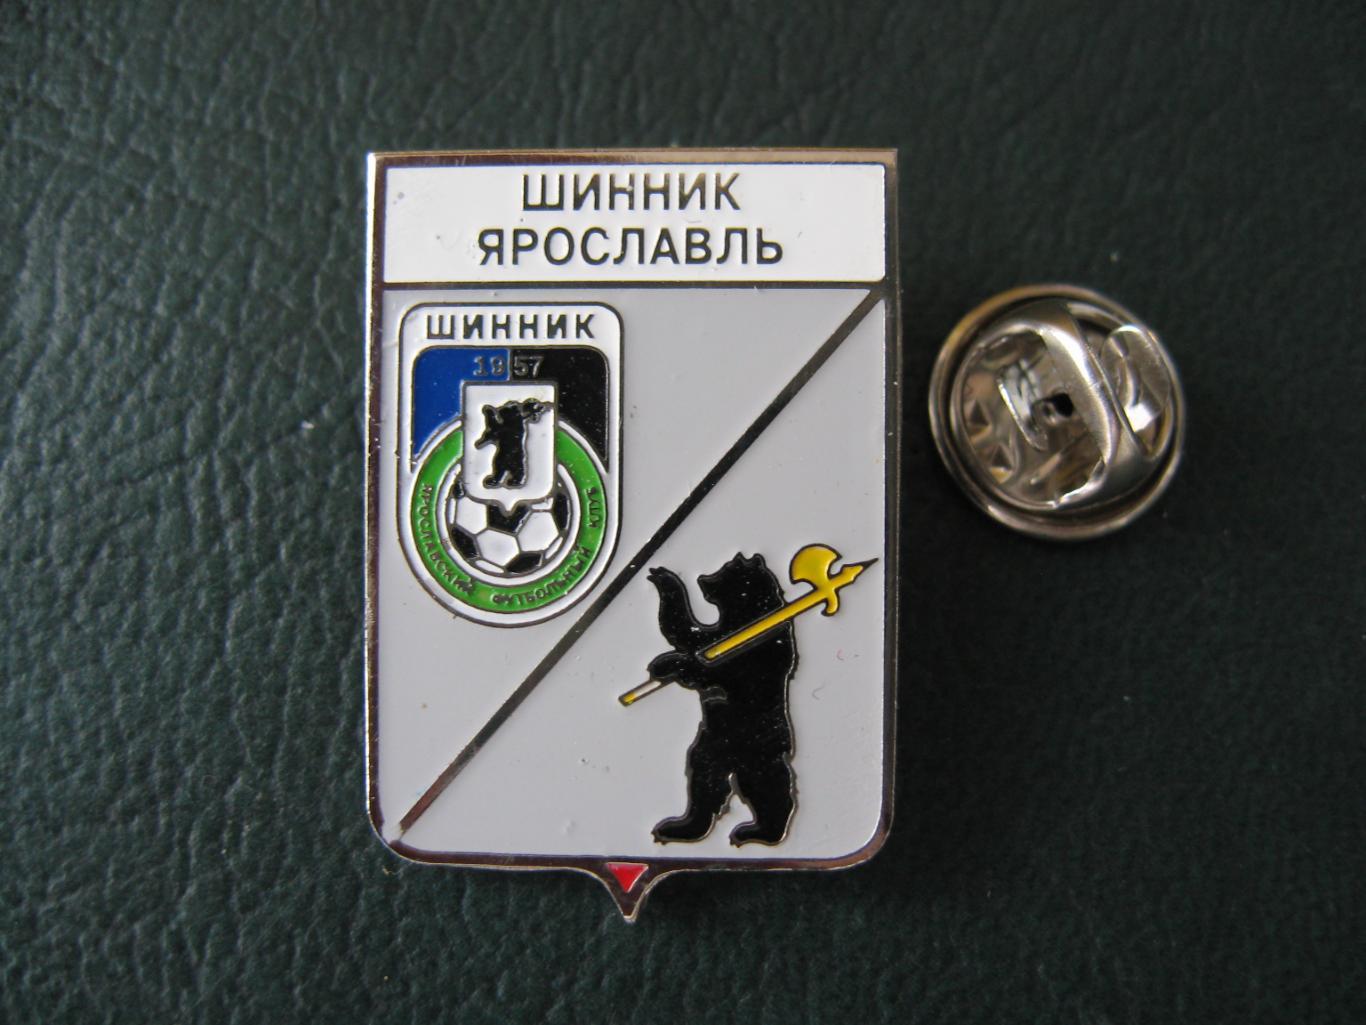 Значок ФК Шинник Ярославль (Эмблема + герб)